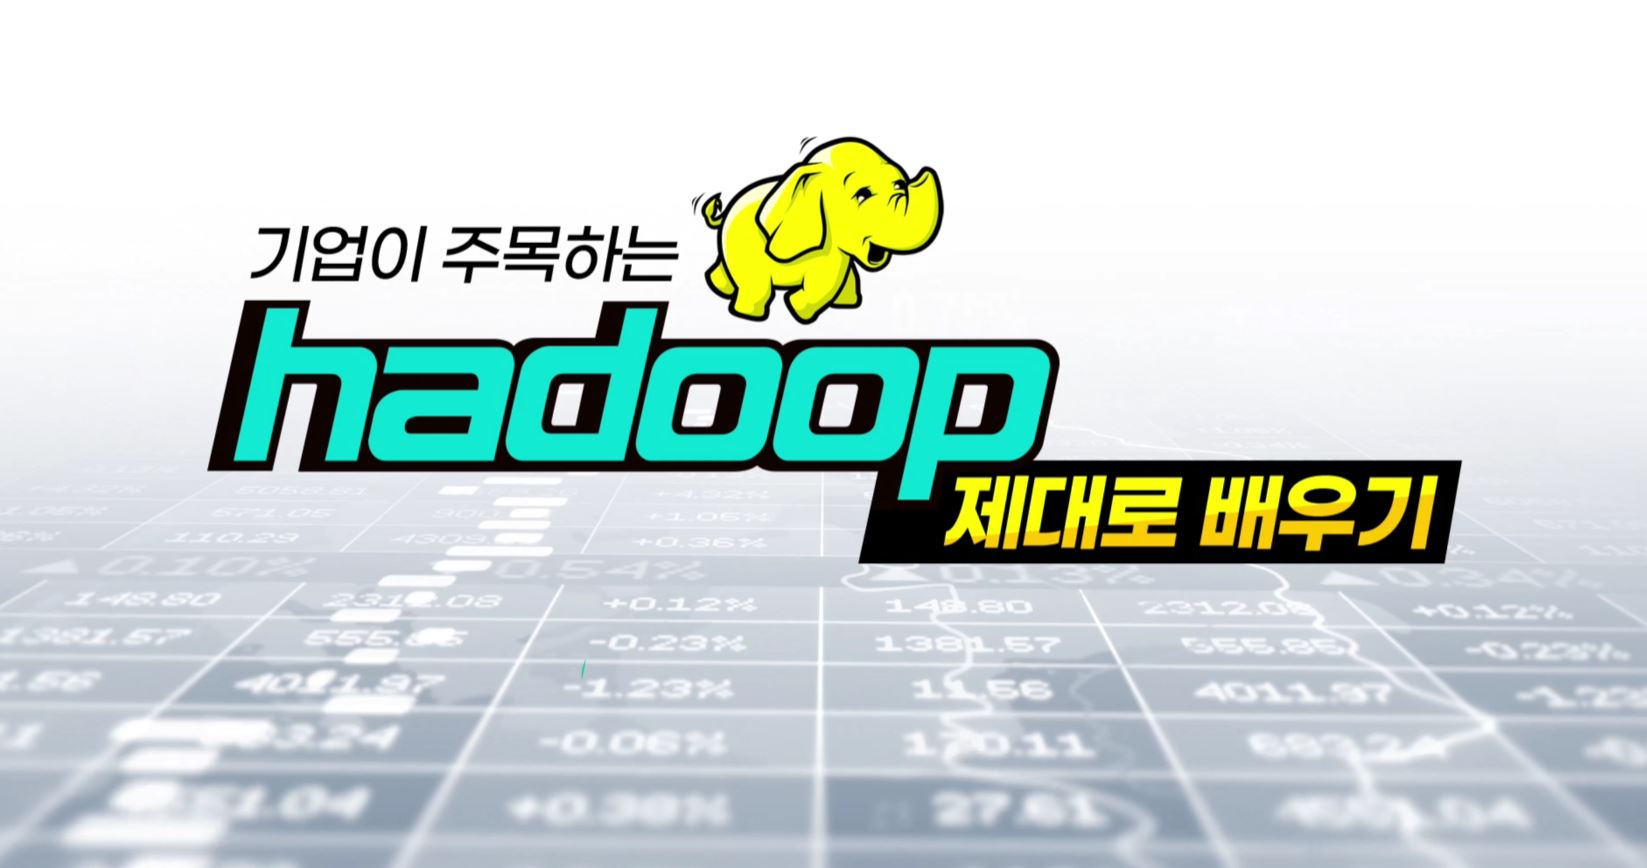 [상위 1% 빅데이터] 기업이 주목하는 Hadoop 제대로 배우기